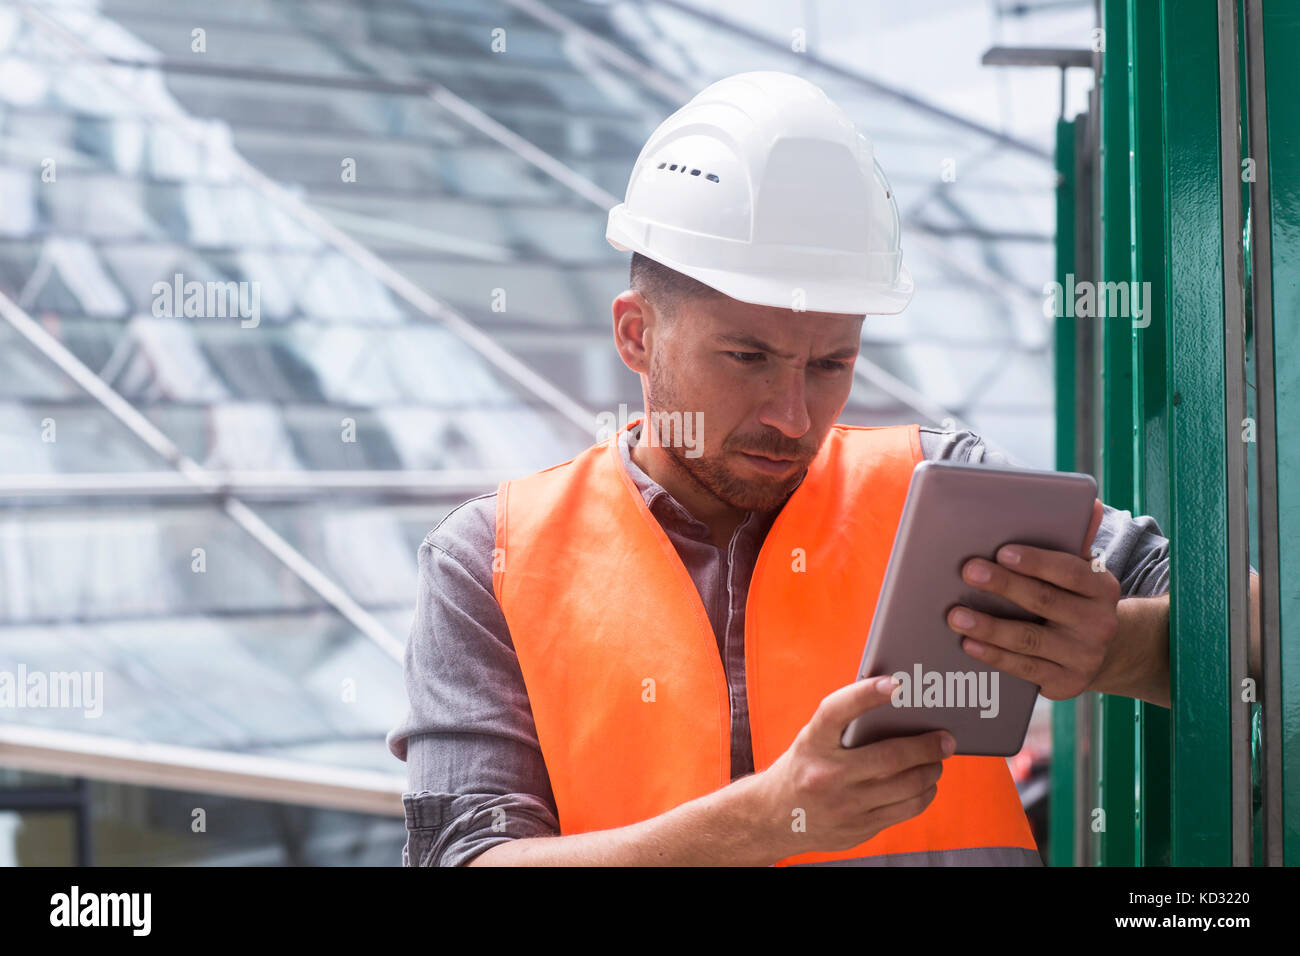 Man wearing hard hat high viz using digital tablet Banque D'Images